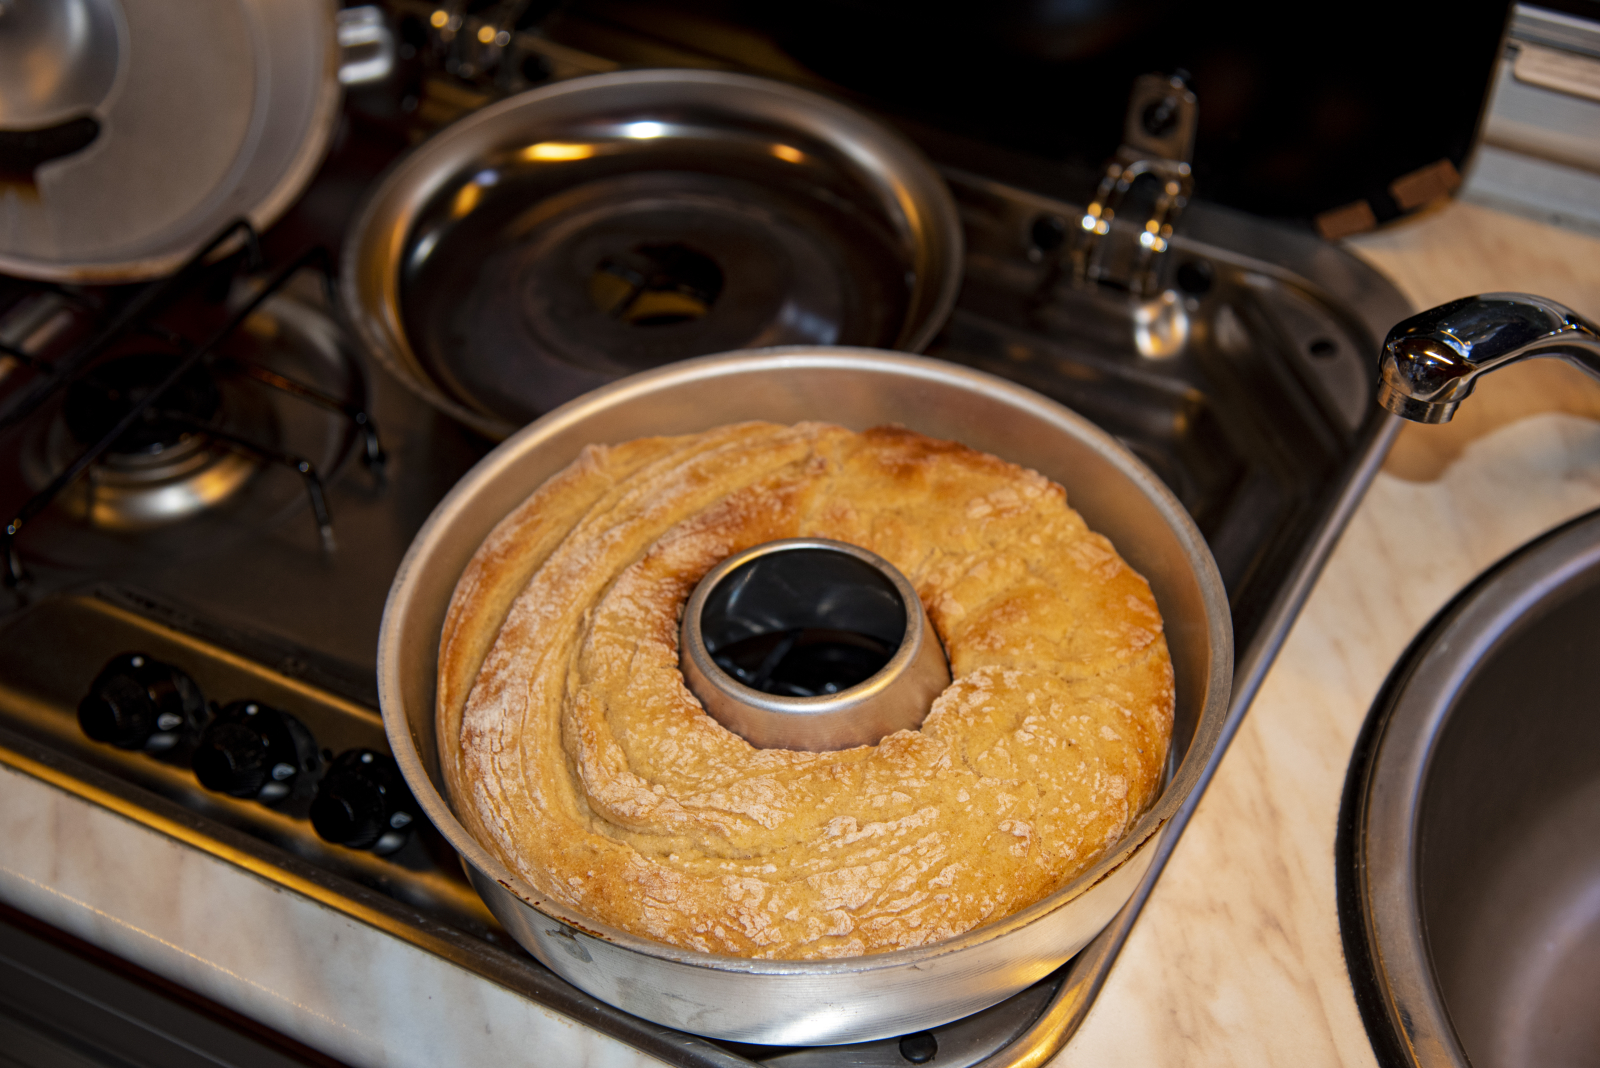 Ist man sich nicht sicher, ob das Brot schon fertig gebacken ist, kann man mit einem Schaschlik-Spieß hineinstechen. Bleibt Teig am Spieß kleben, ist es noch nicht fertig.